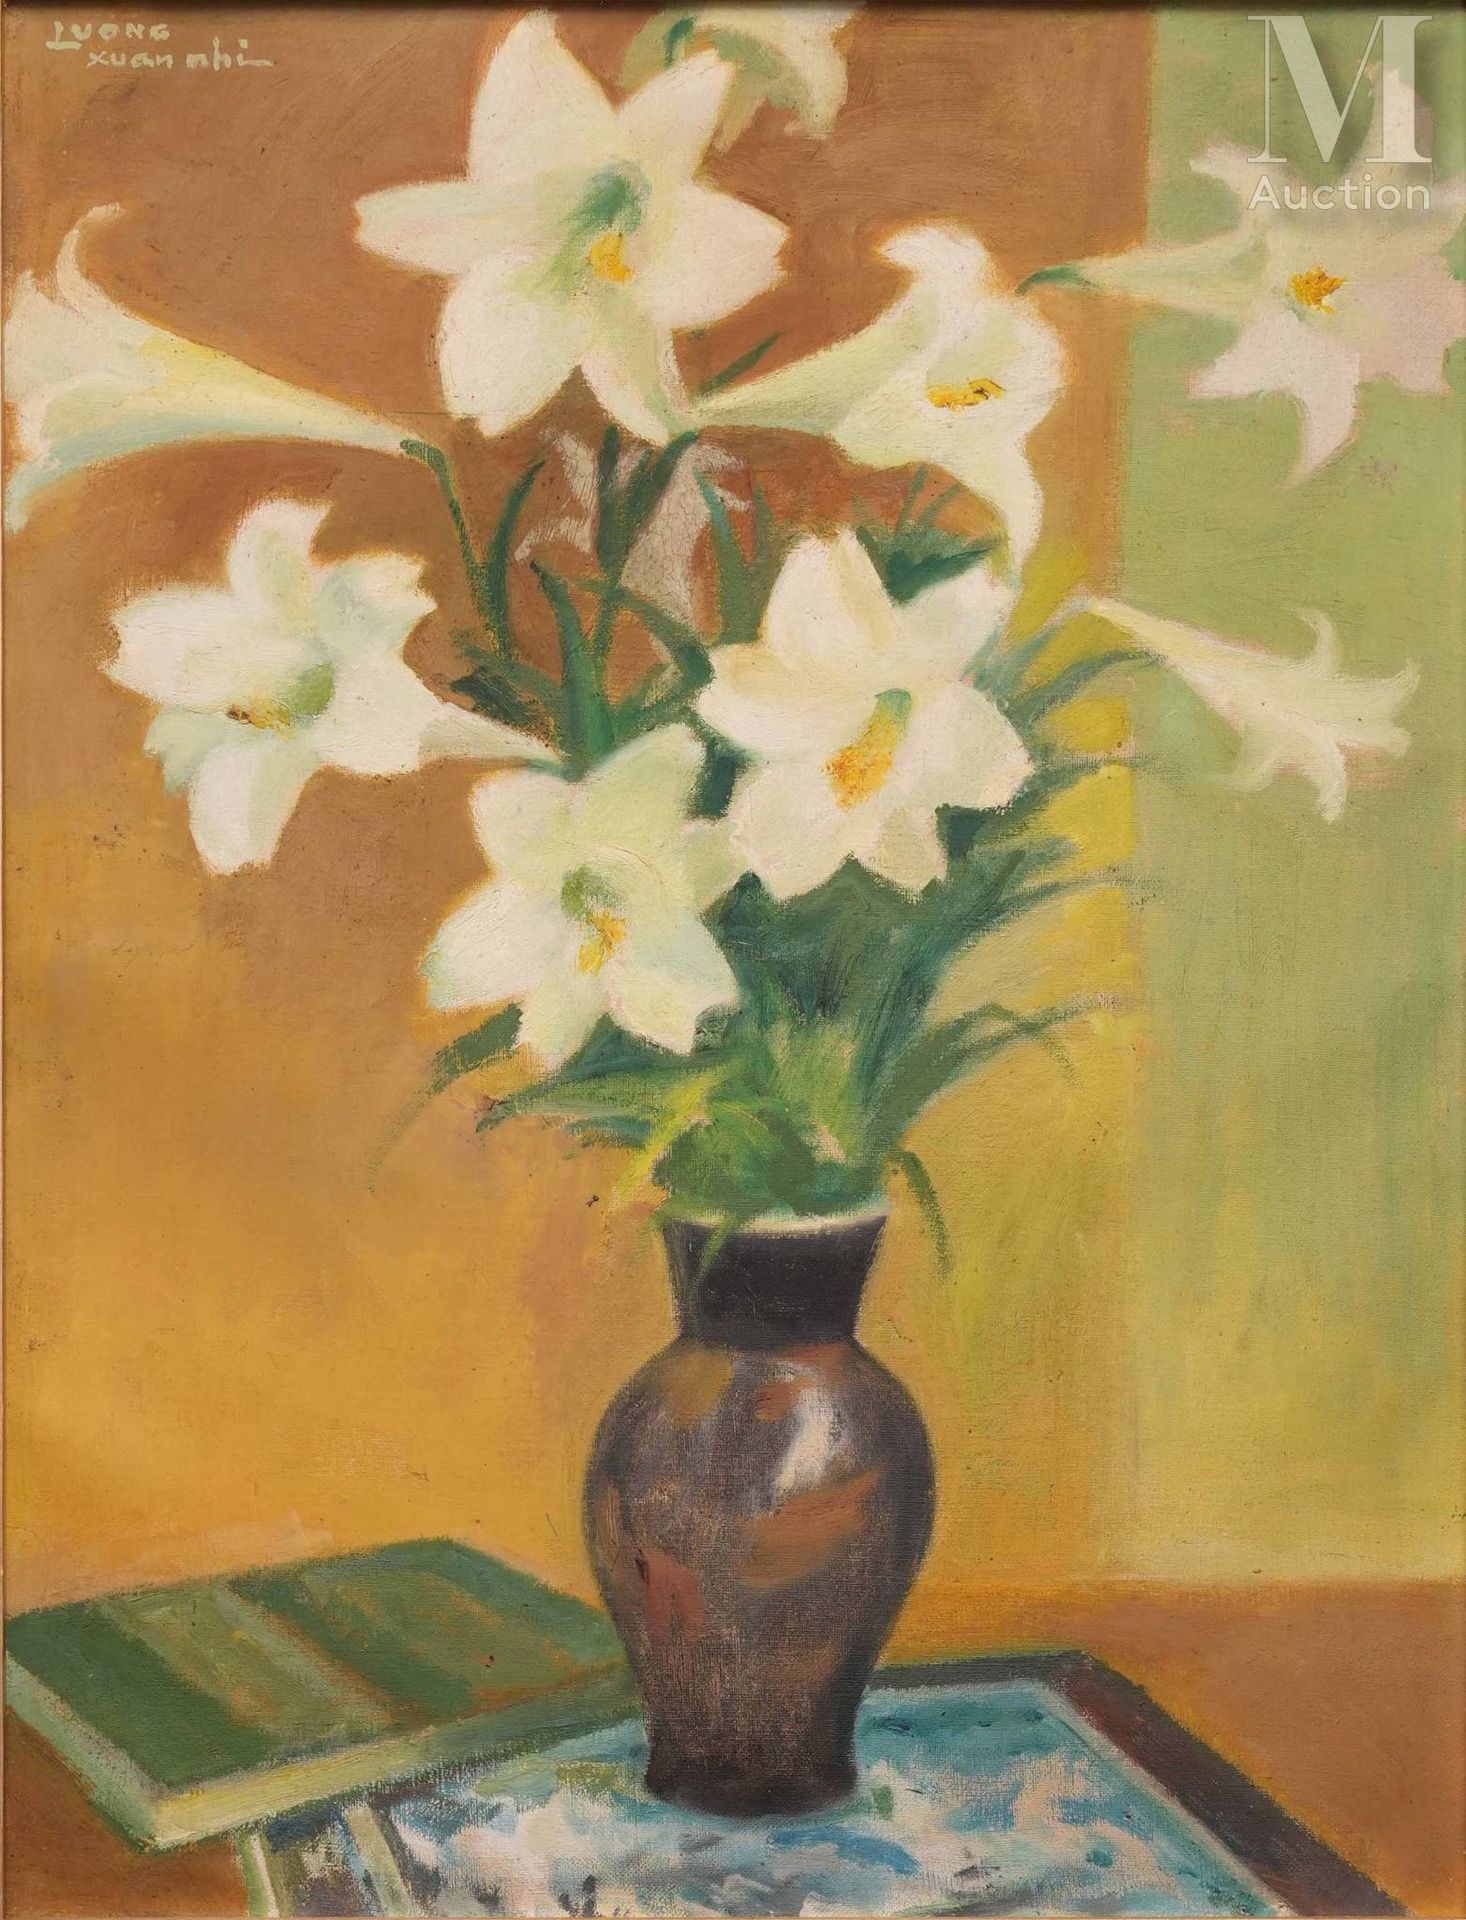 Ⓗ LUONG XUAN NHI (1914-2006) "Lys dans un vase"
Huile sur toile
Signé en haut à &hellip;